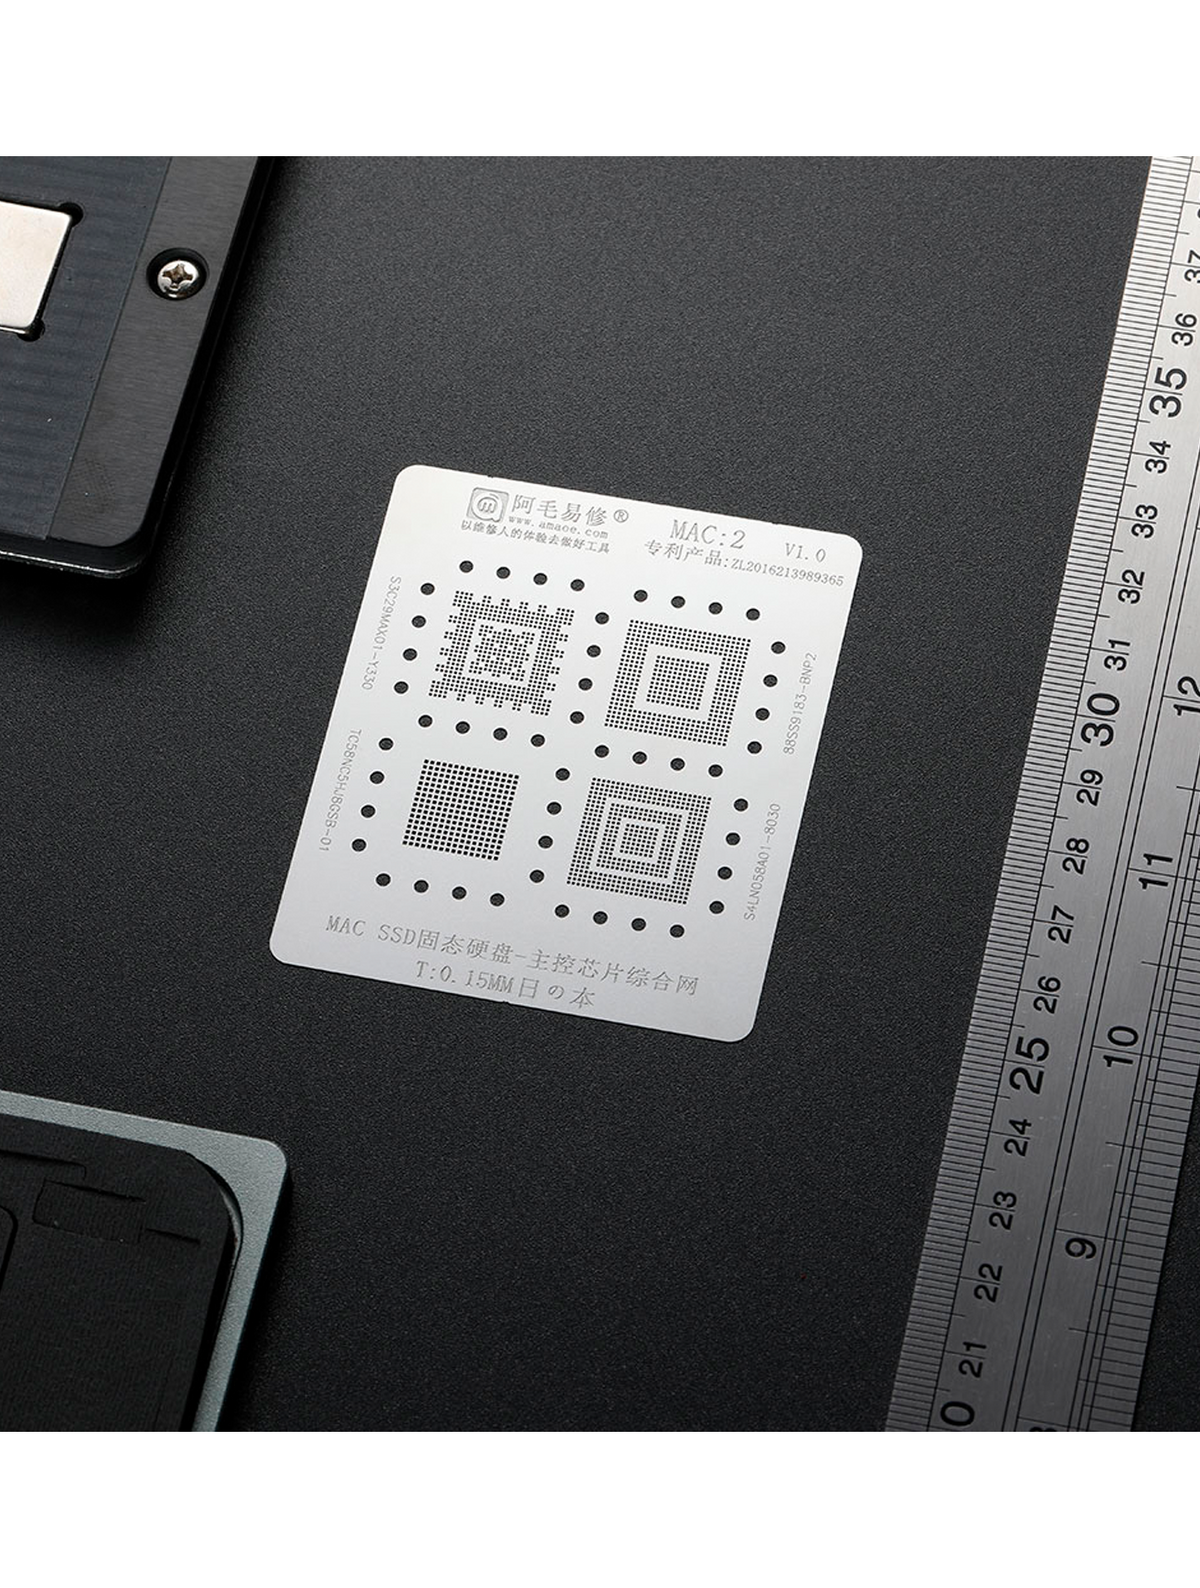 SSD Stencil Compatible For MacBooks (MAC 2)